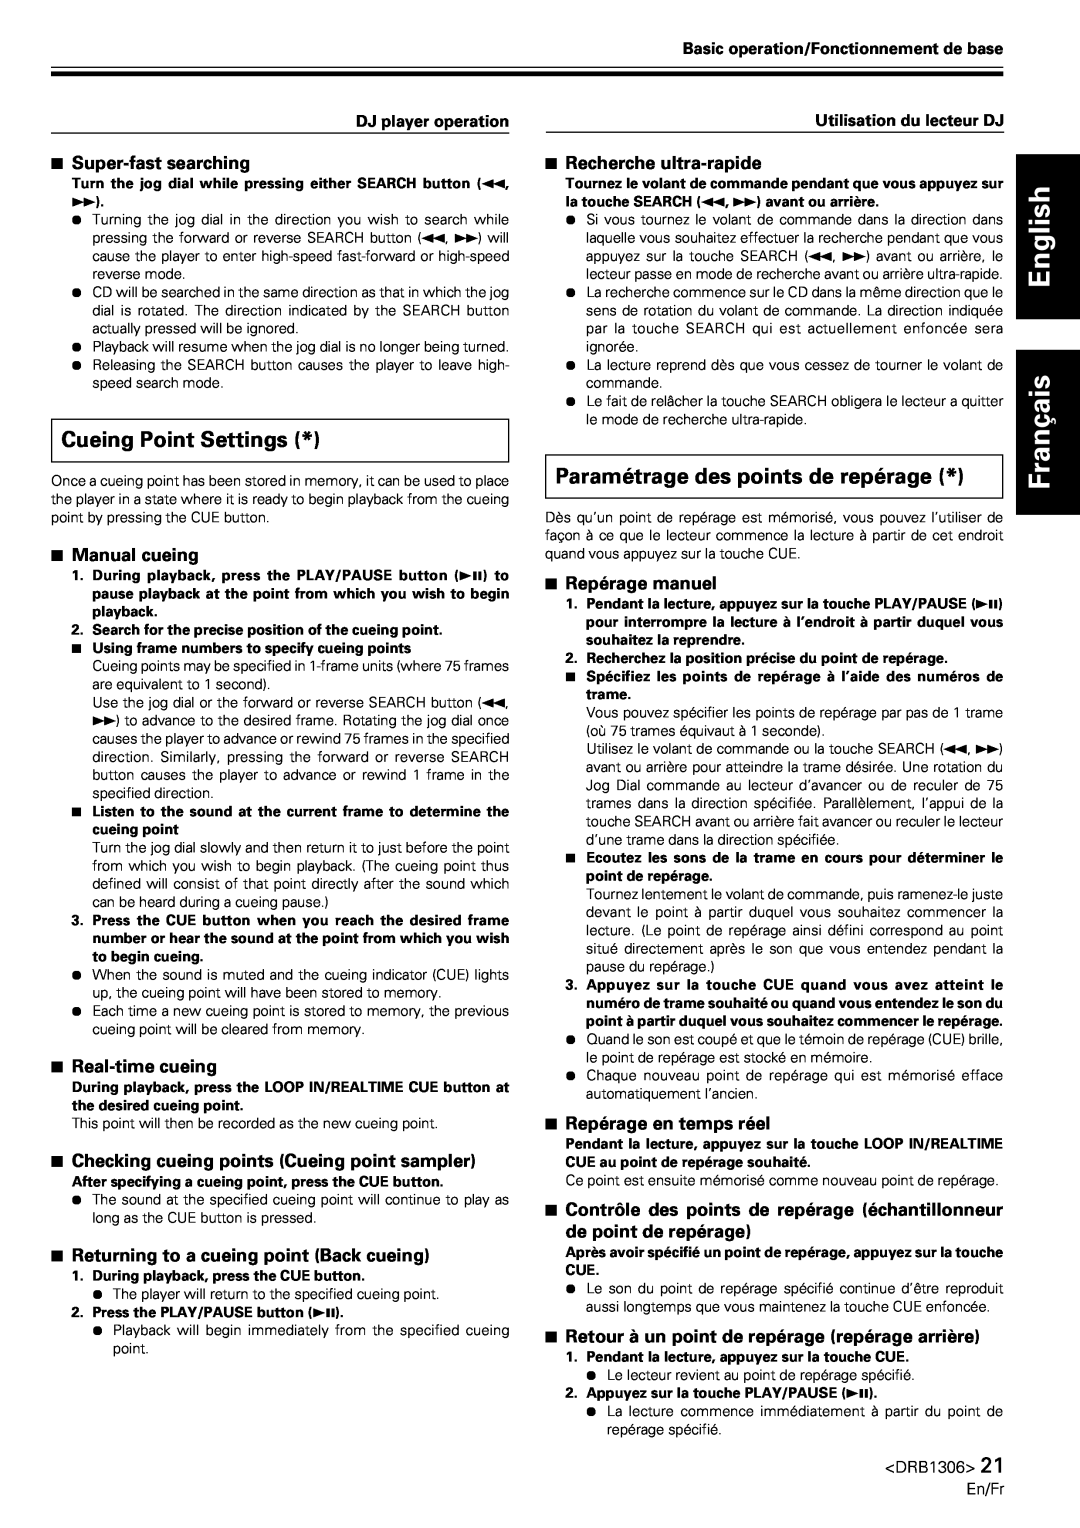 Pioneer CMX-3000 operating instructions Cueing Point Settings, Paramétrage des points de repérage, English Français 